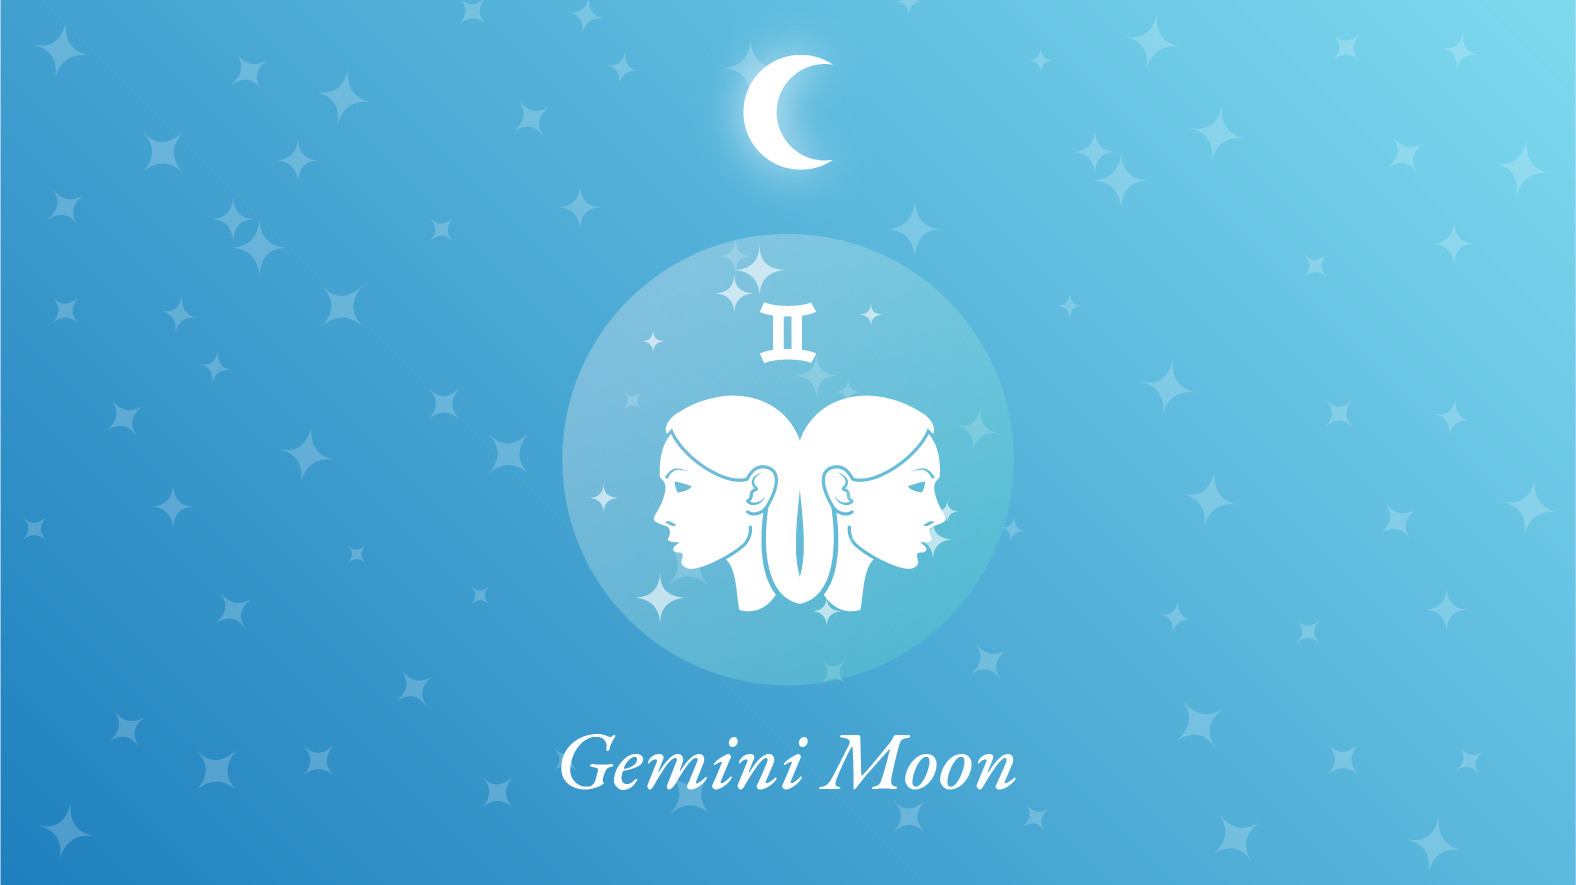 Gemini Moon Sign